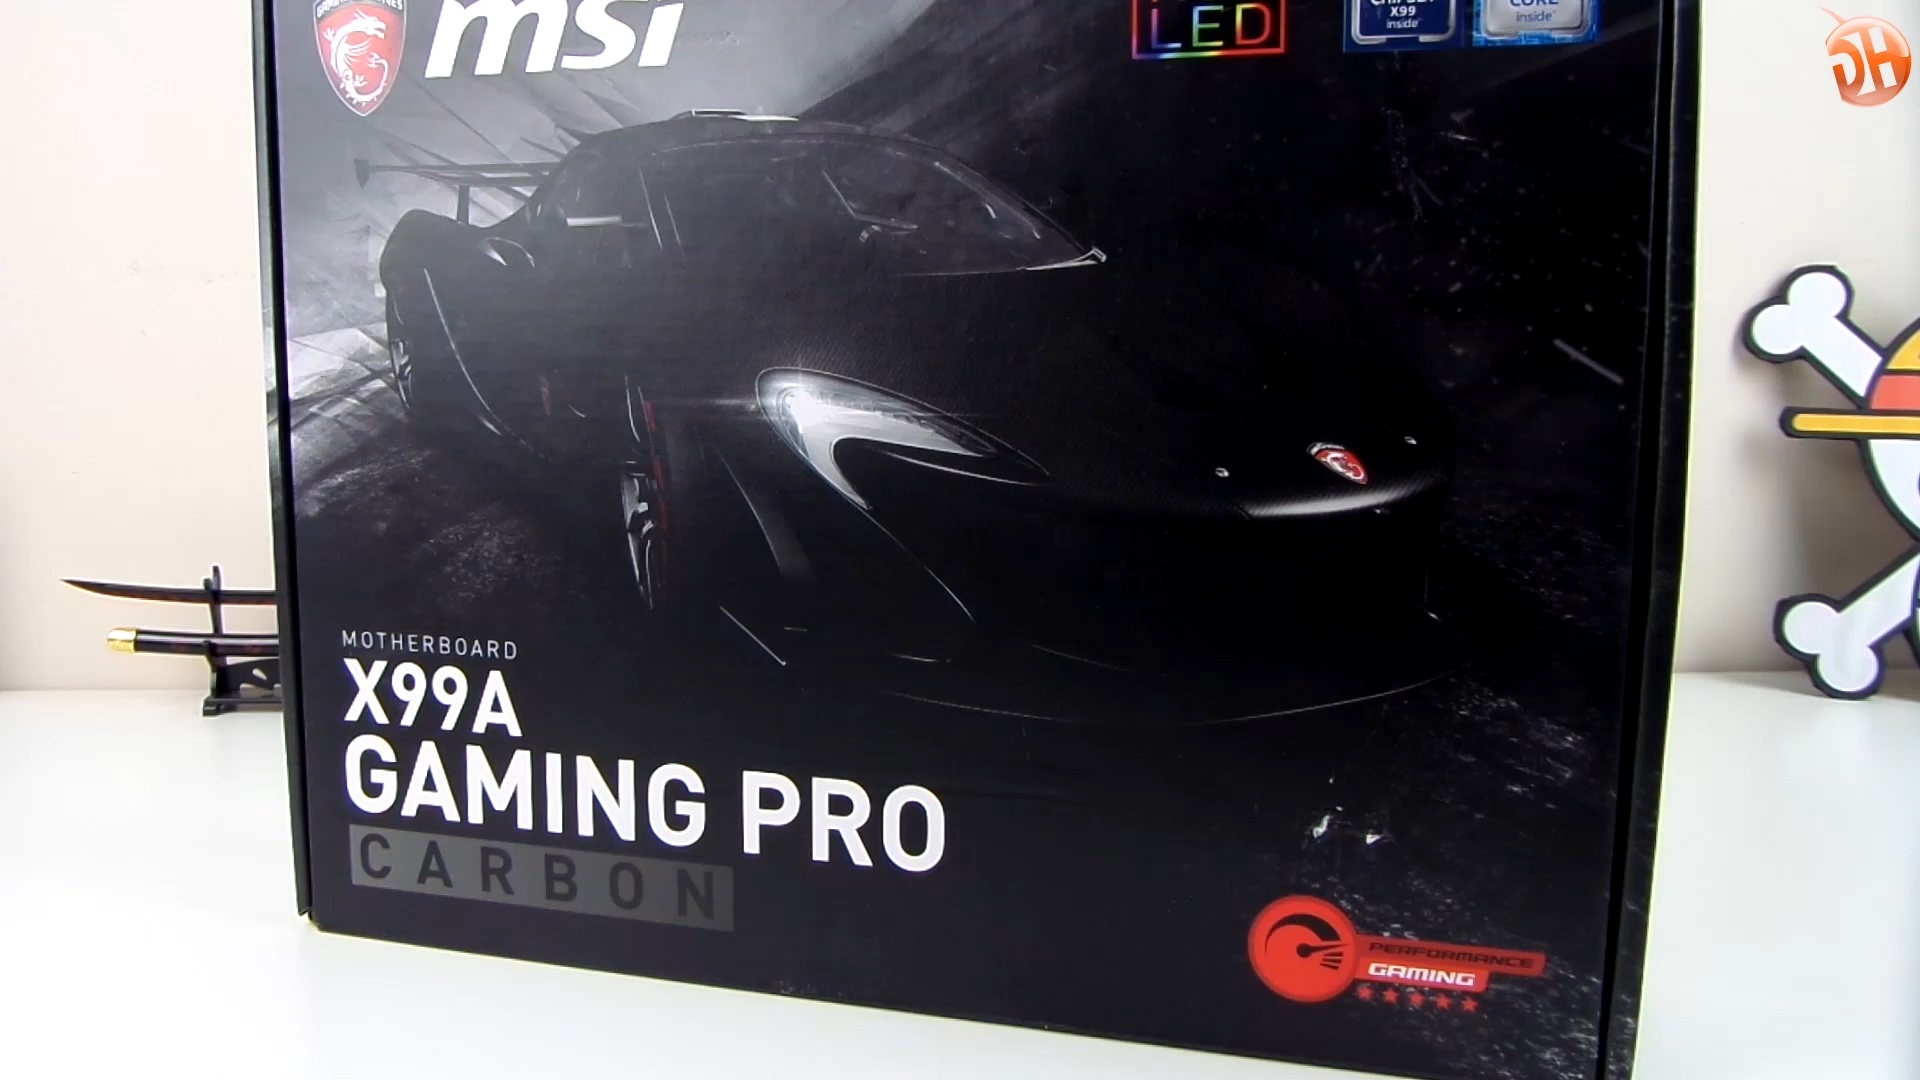 MSI X99A Gaming Pro Carbon 'Hem tasarım hem performans' anakartını inceliyoruz